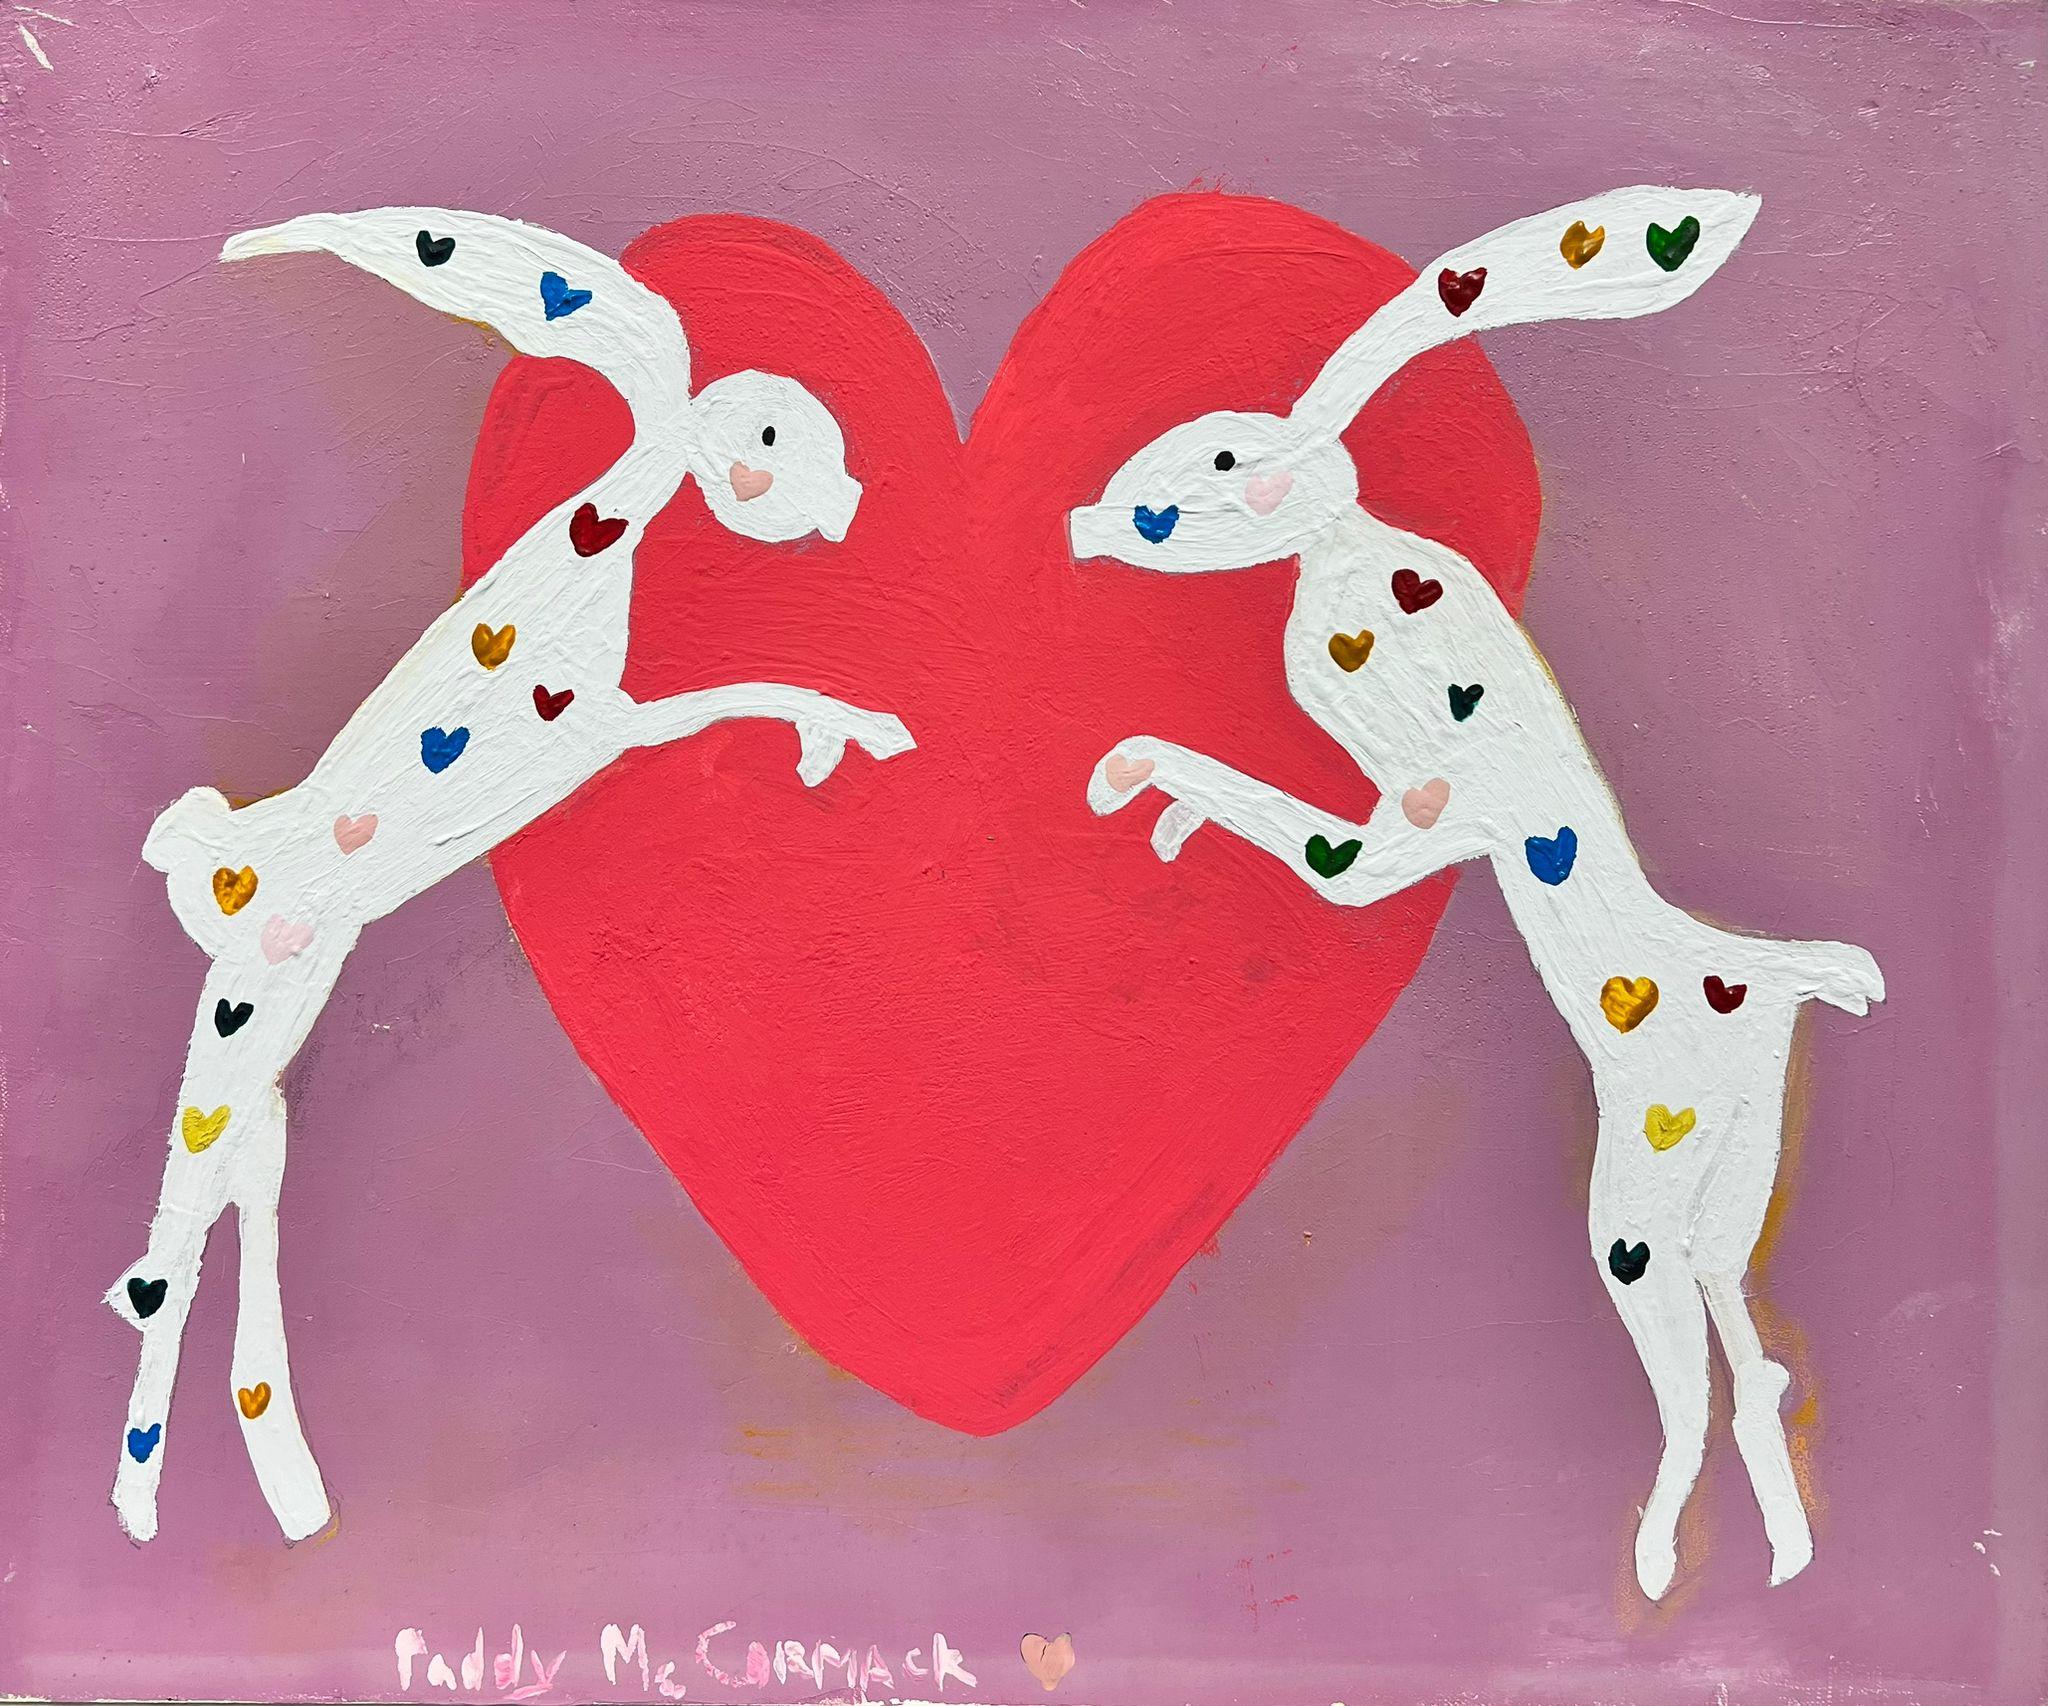 March Hares, farbenfrohes irisches zeitgenössisches abstraktes Gemälde mit Herzhölzern